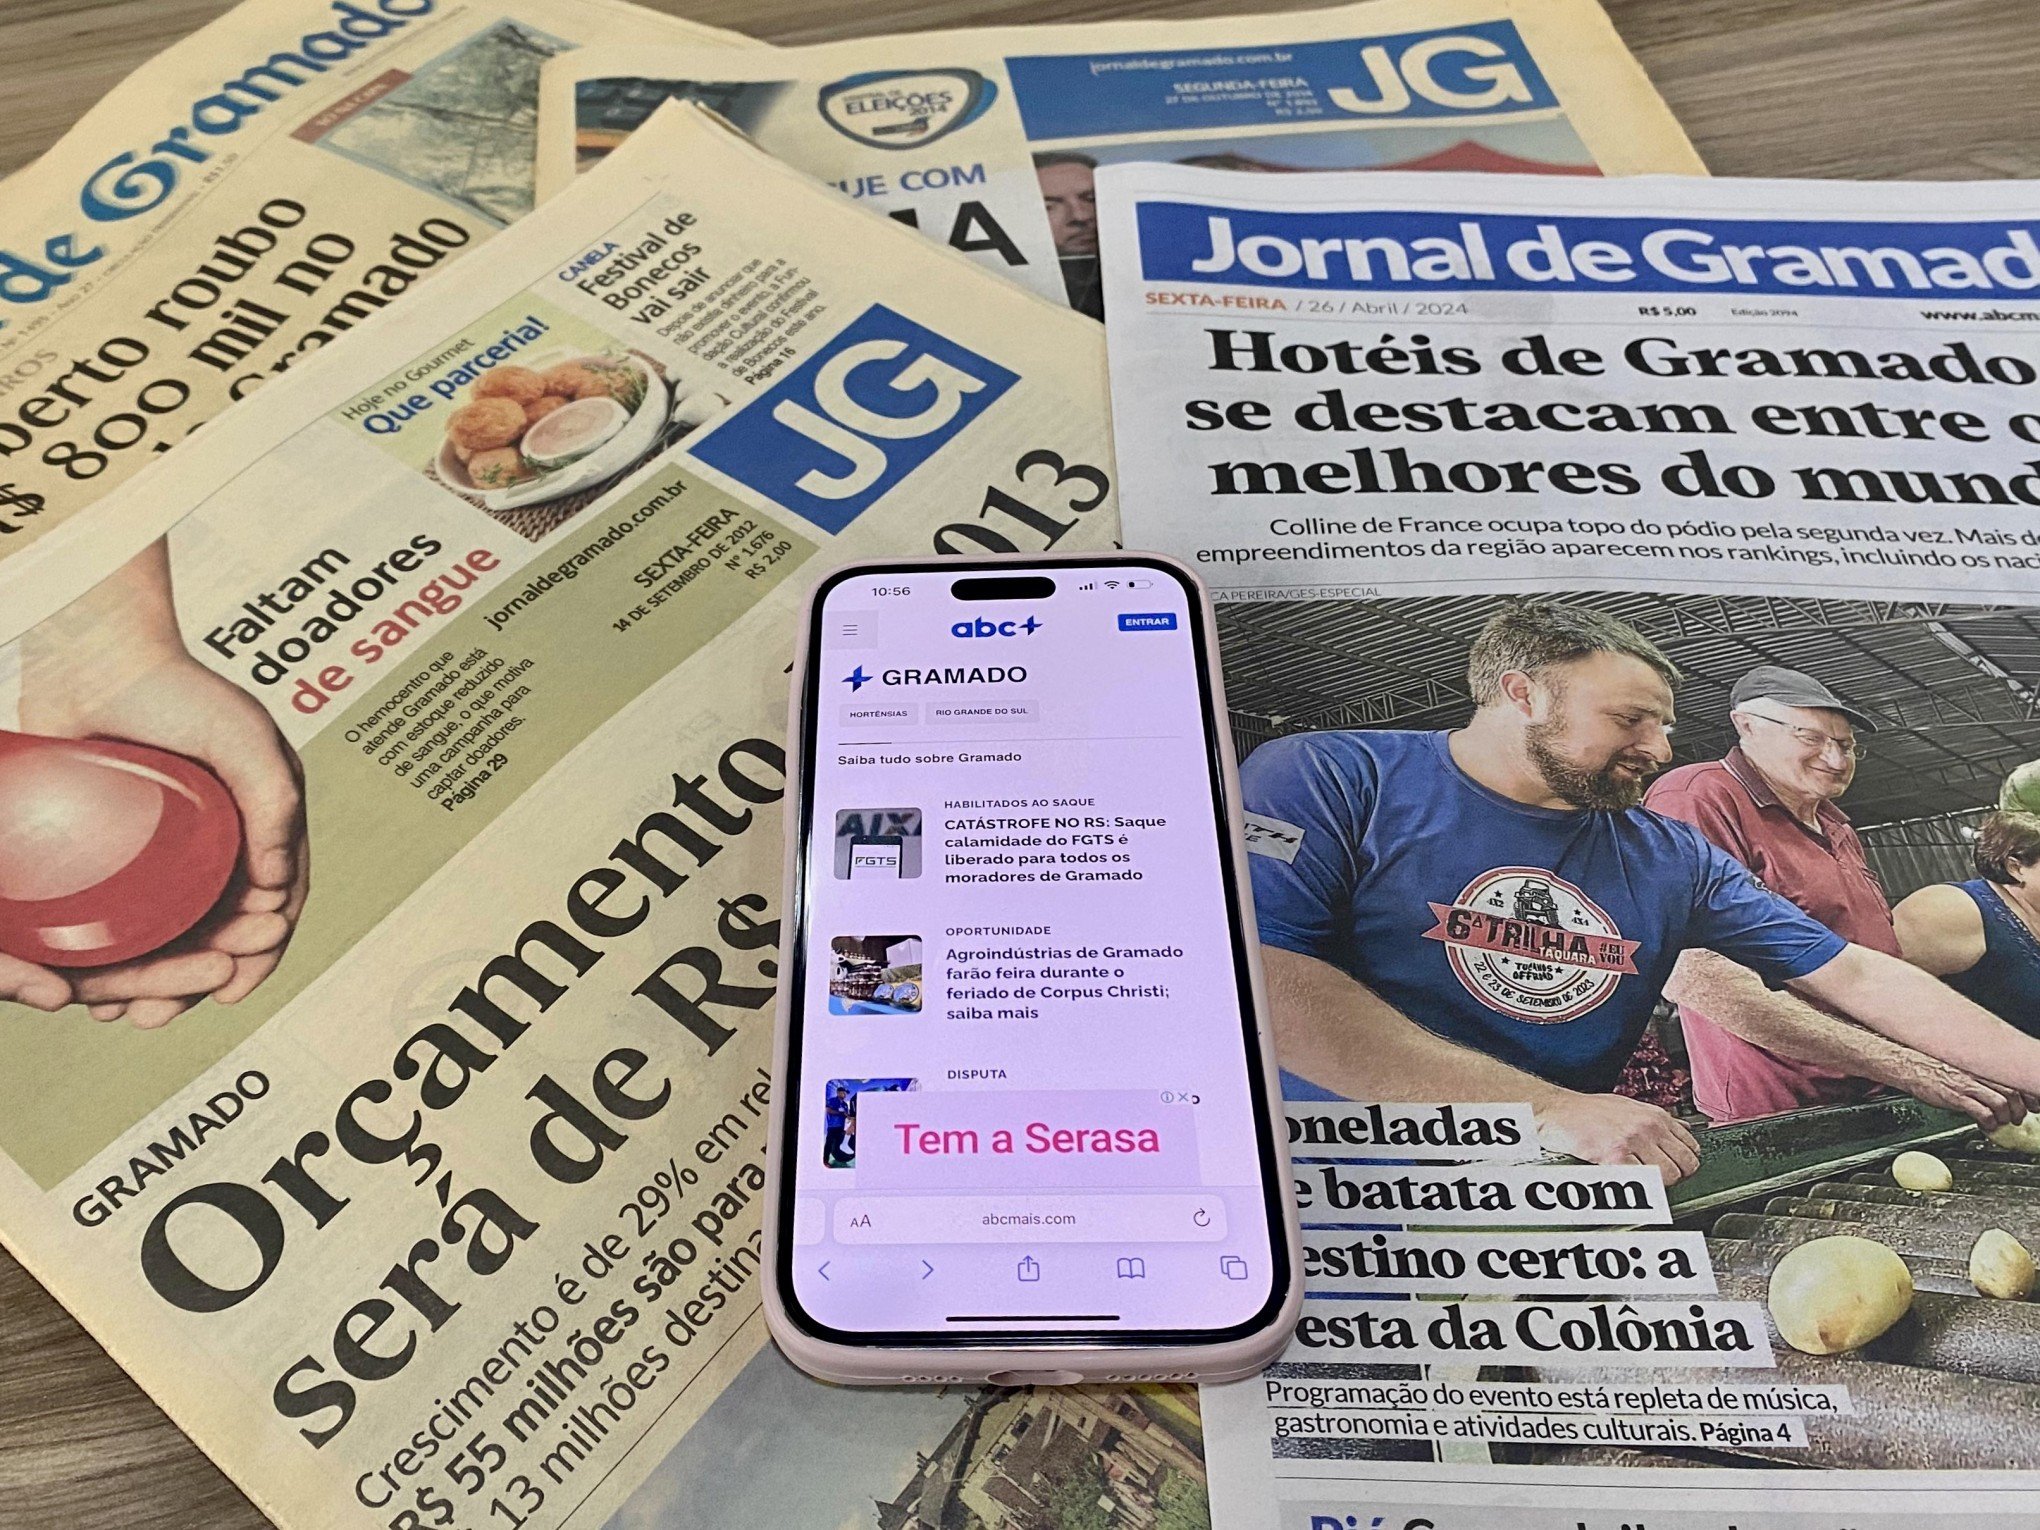 Ultrapassando as fronteiras da Serra, Jornal de Gramado completa 40 anos